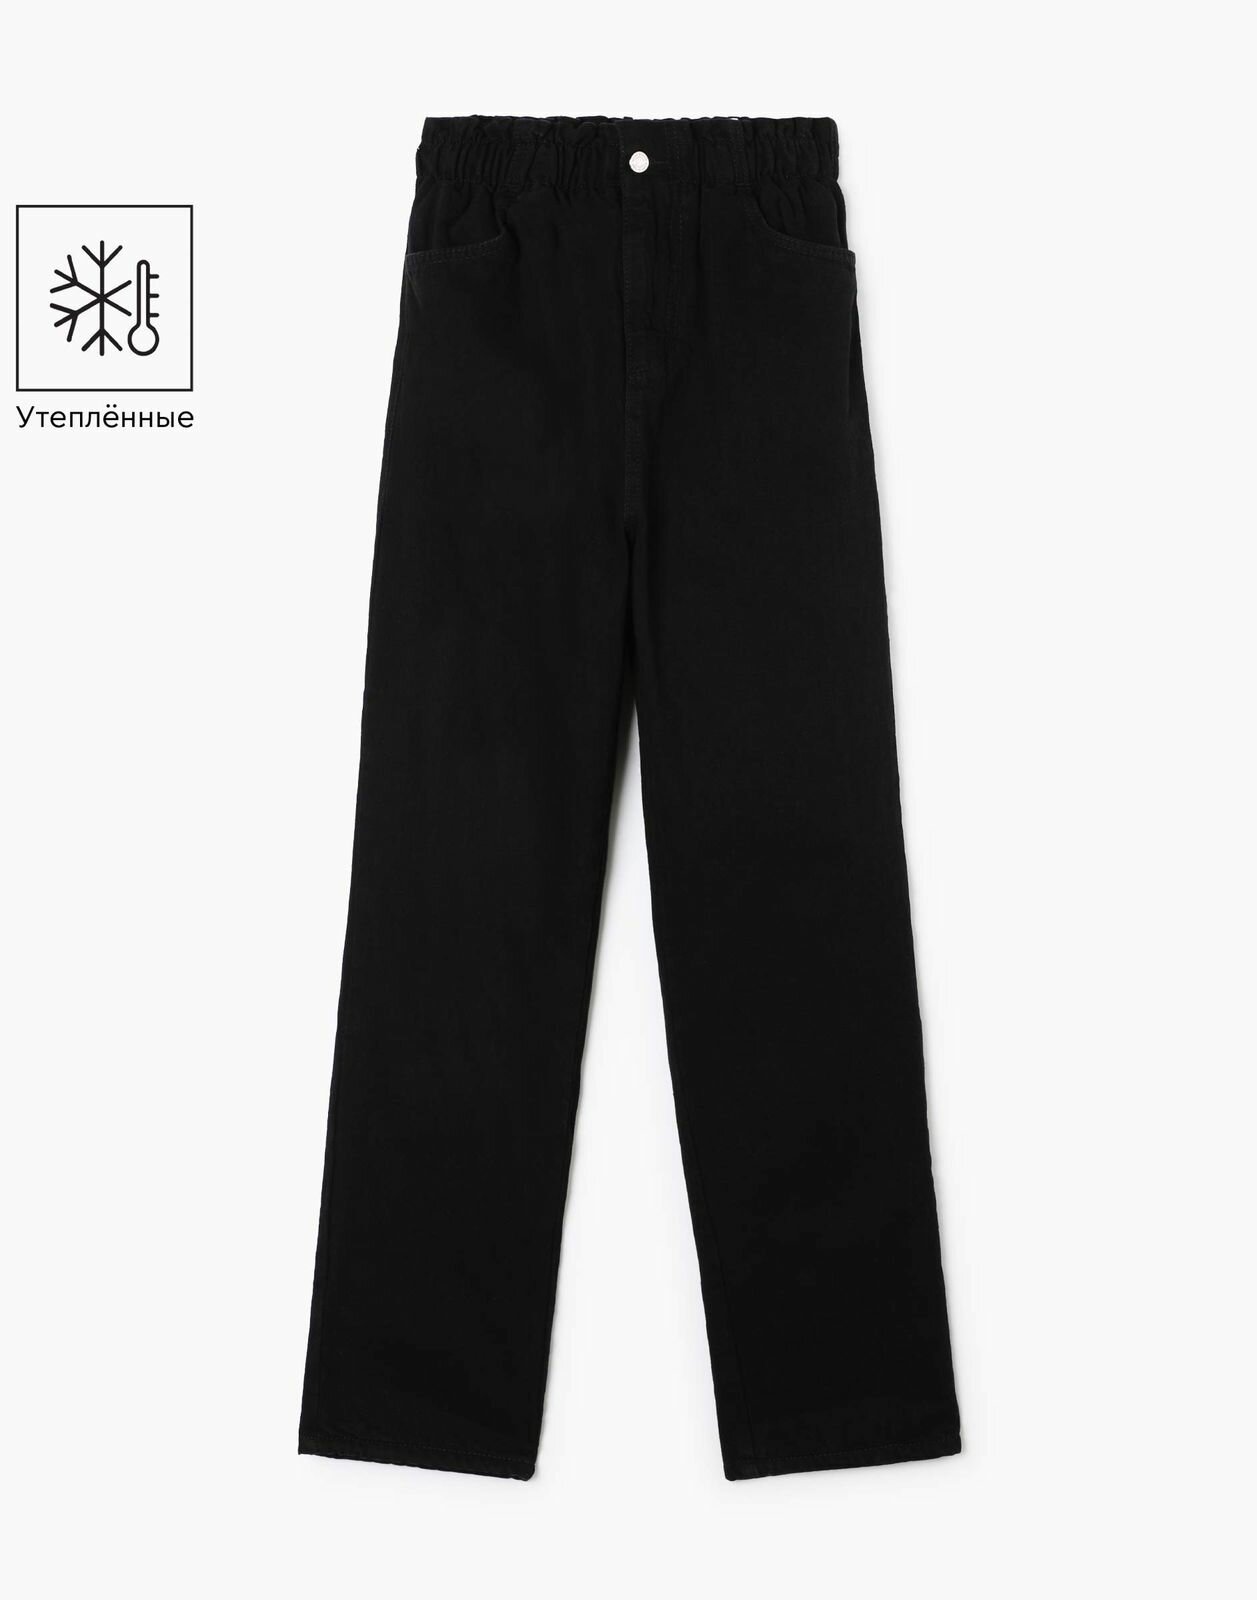 Утепленные джинсы Gloria Jeans GWB001324 черный для девочек 8-9л/134 (33)